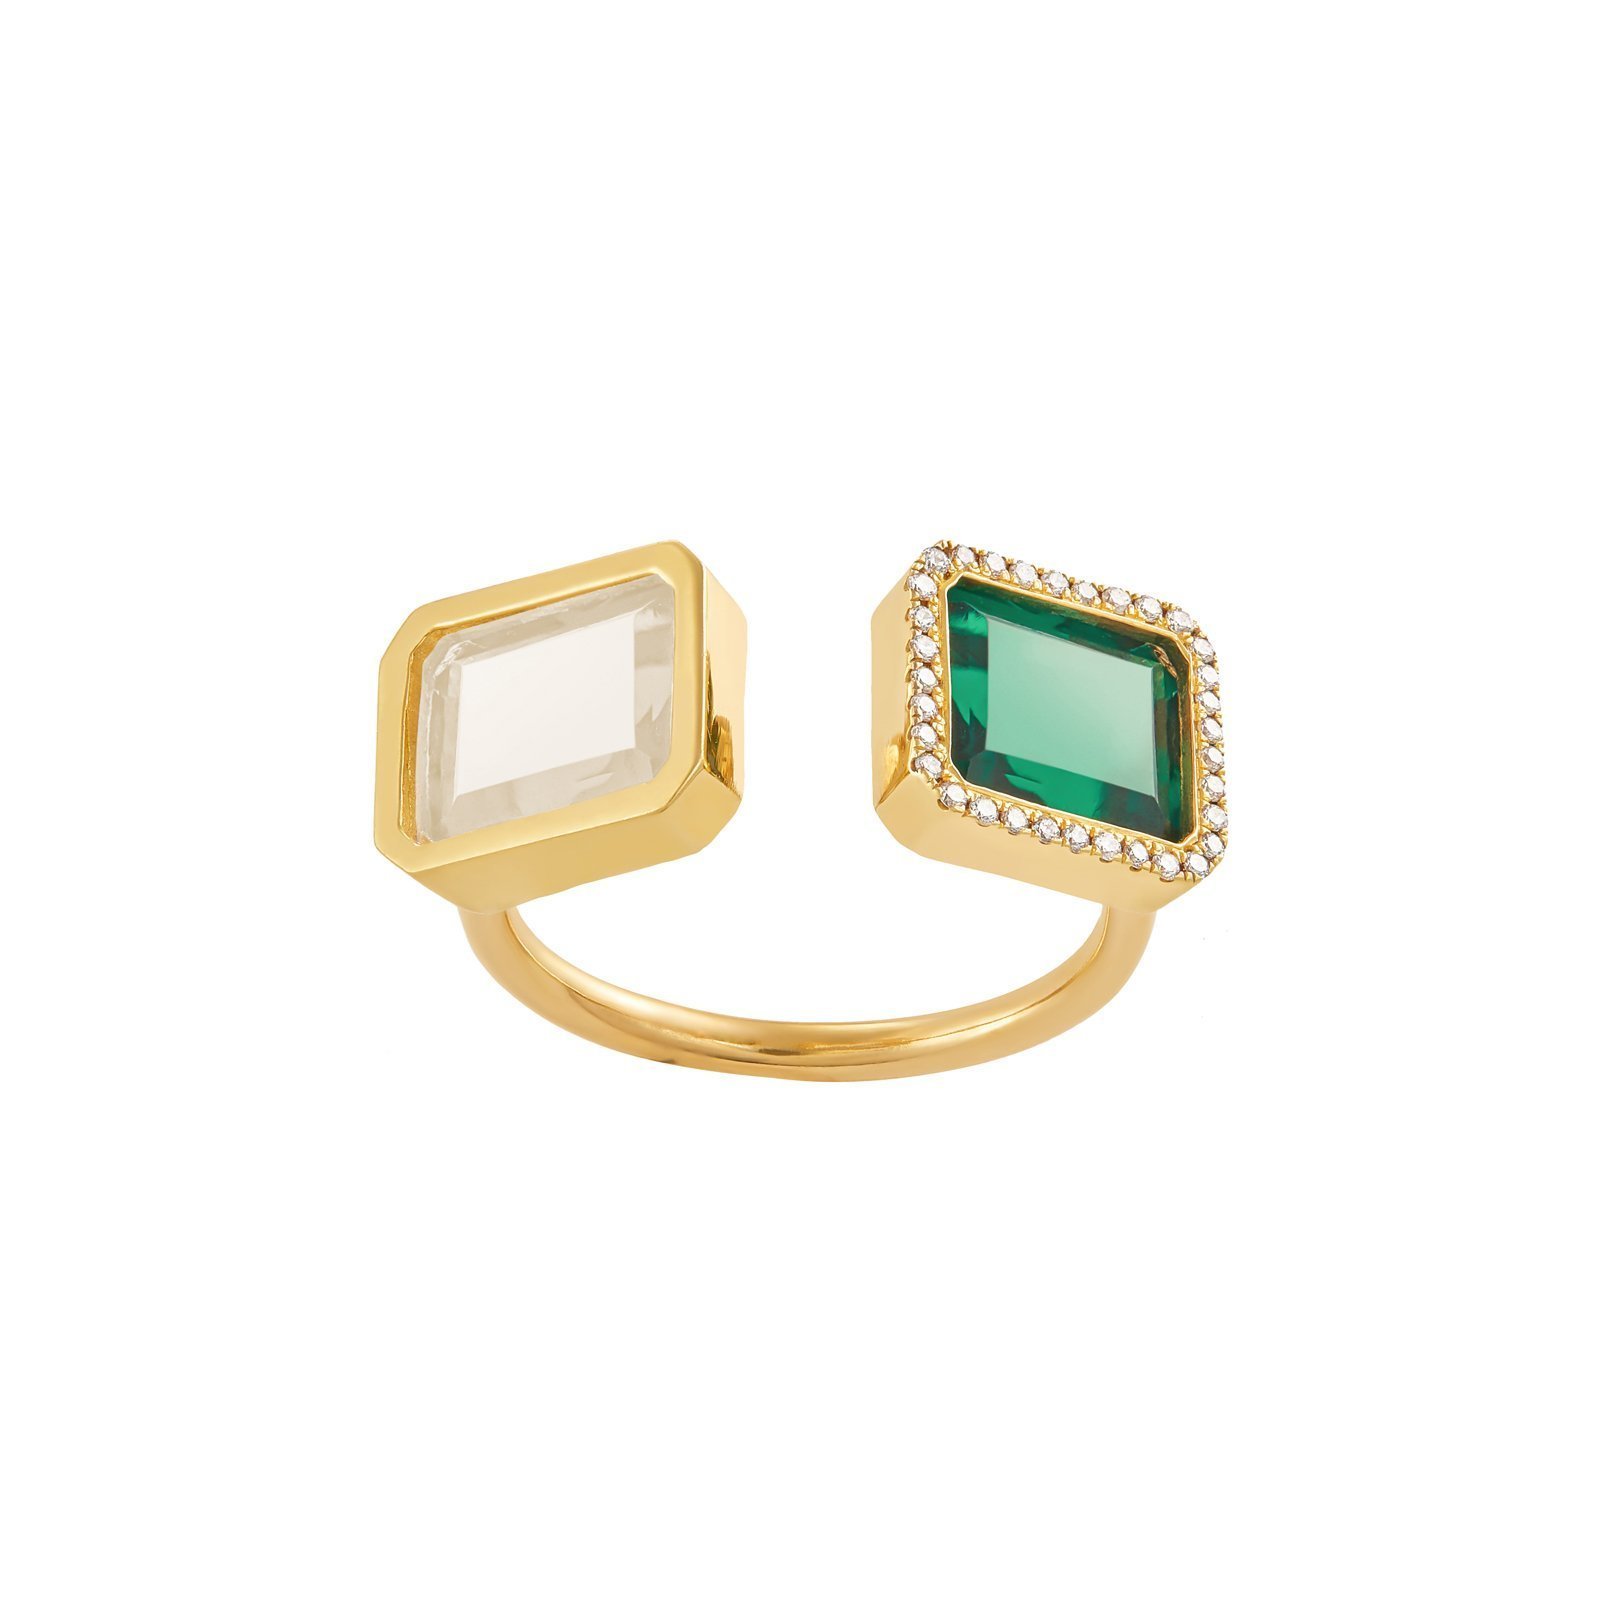 الخاتم مزدوج الأحجار الكريمة من مجوهرات ديما Dima Jewellery